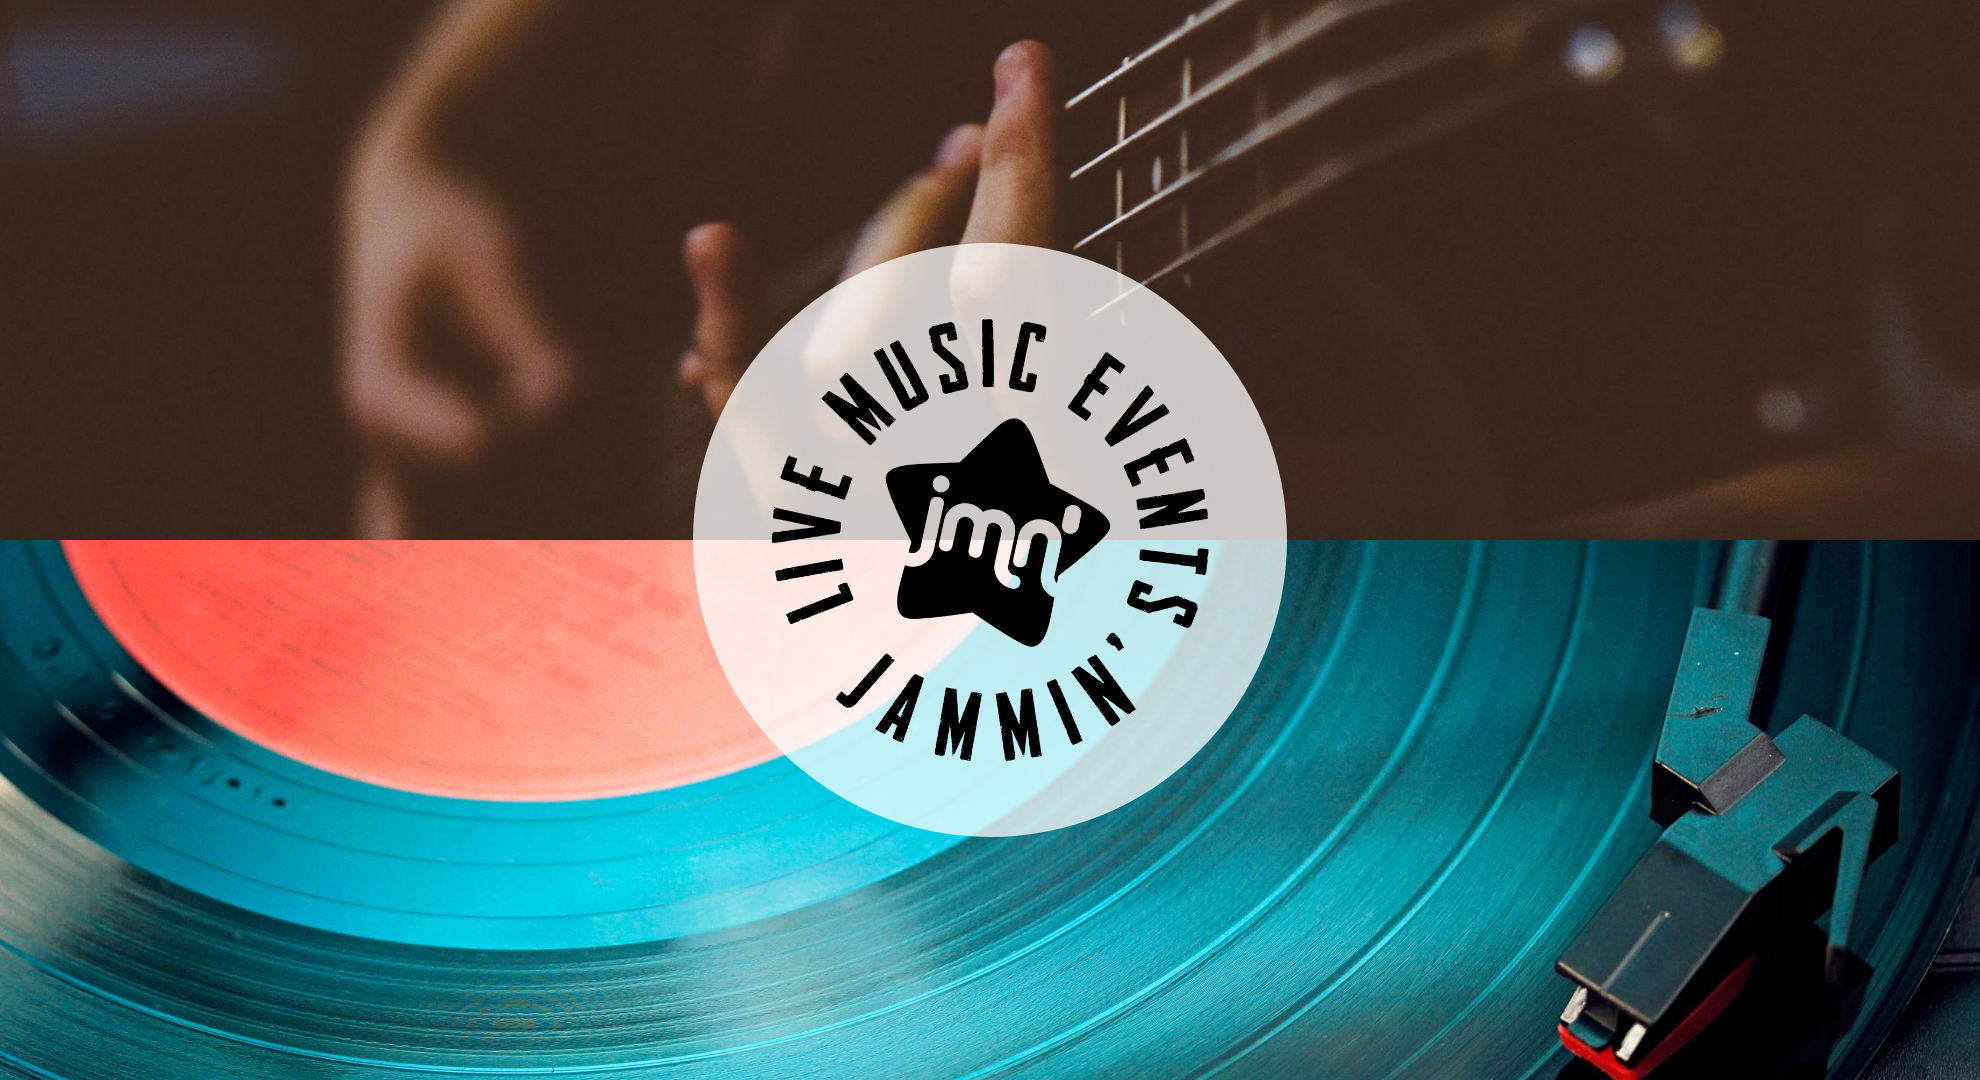 Jammin' LiveMusic Events Promotores de música en directo, conciertos, festivales y artistas